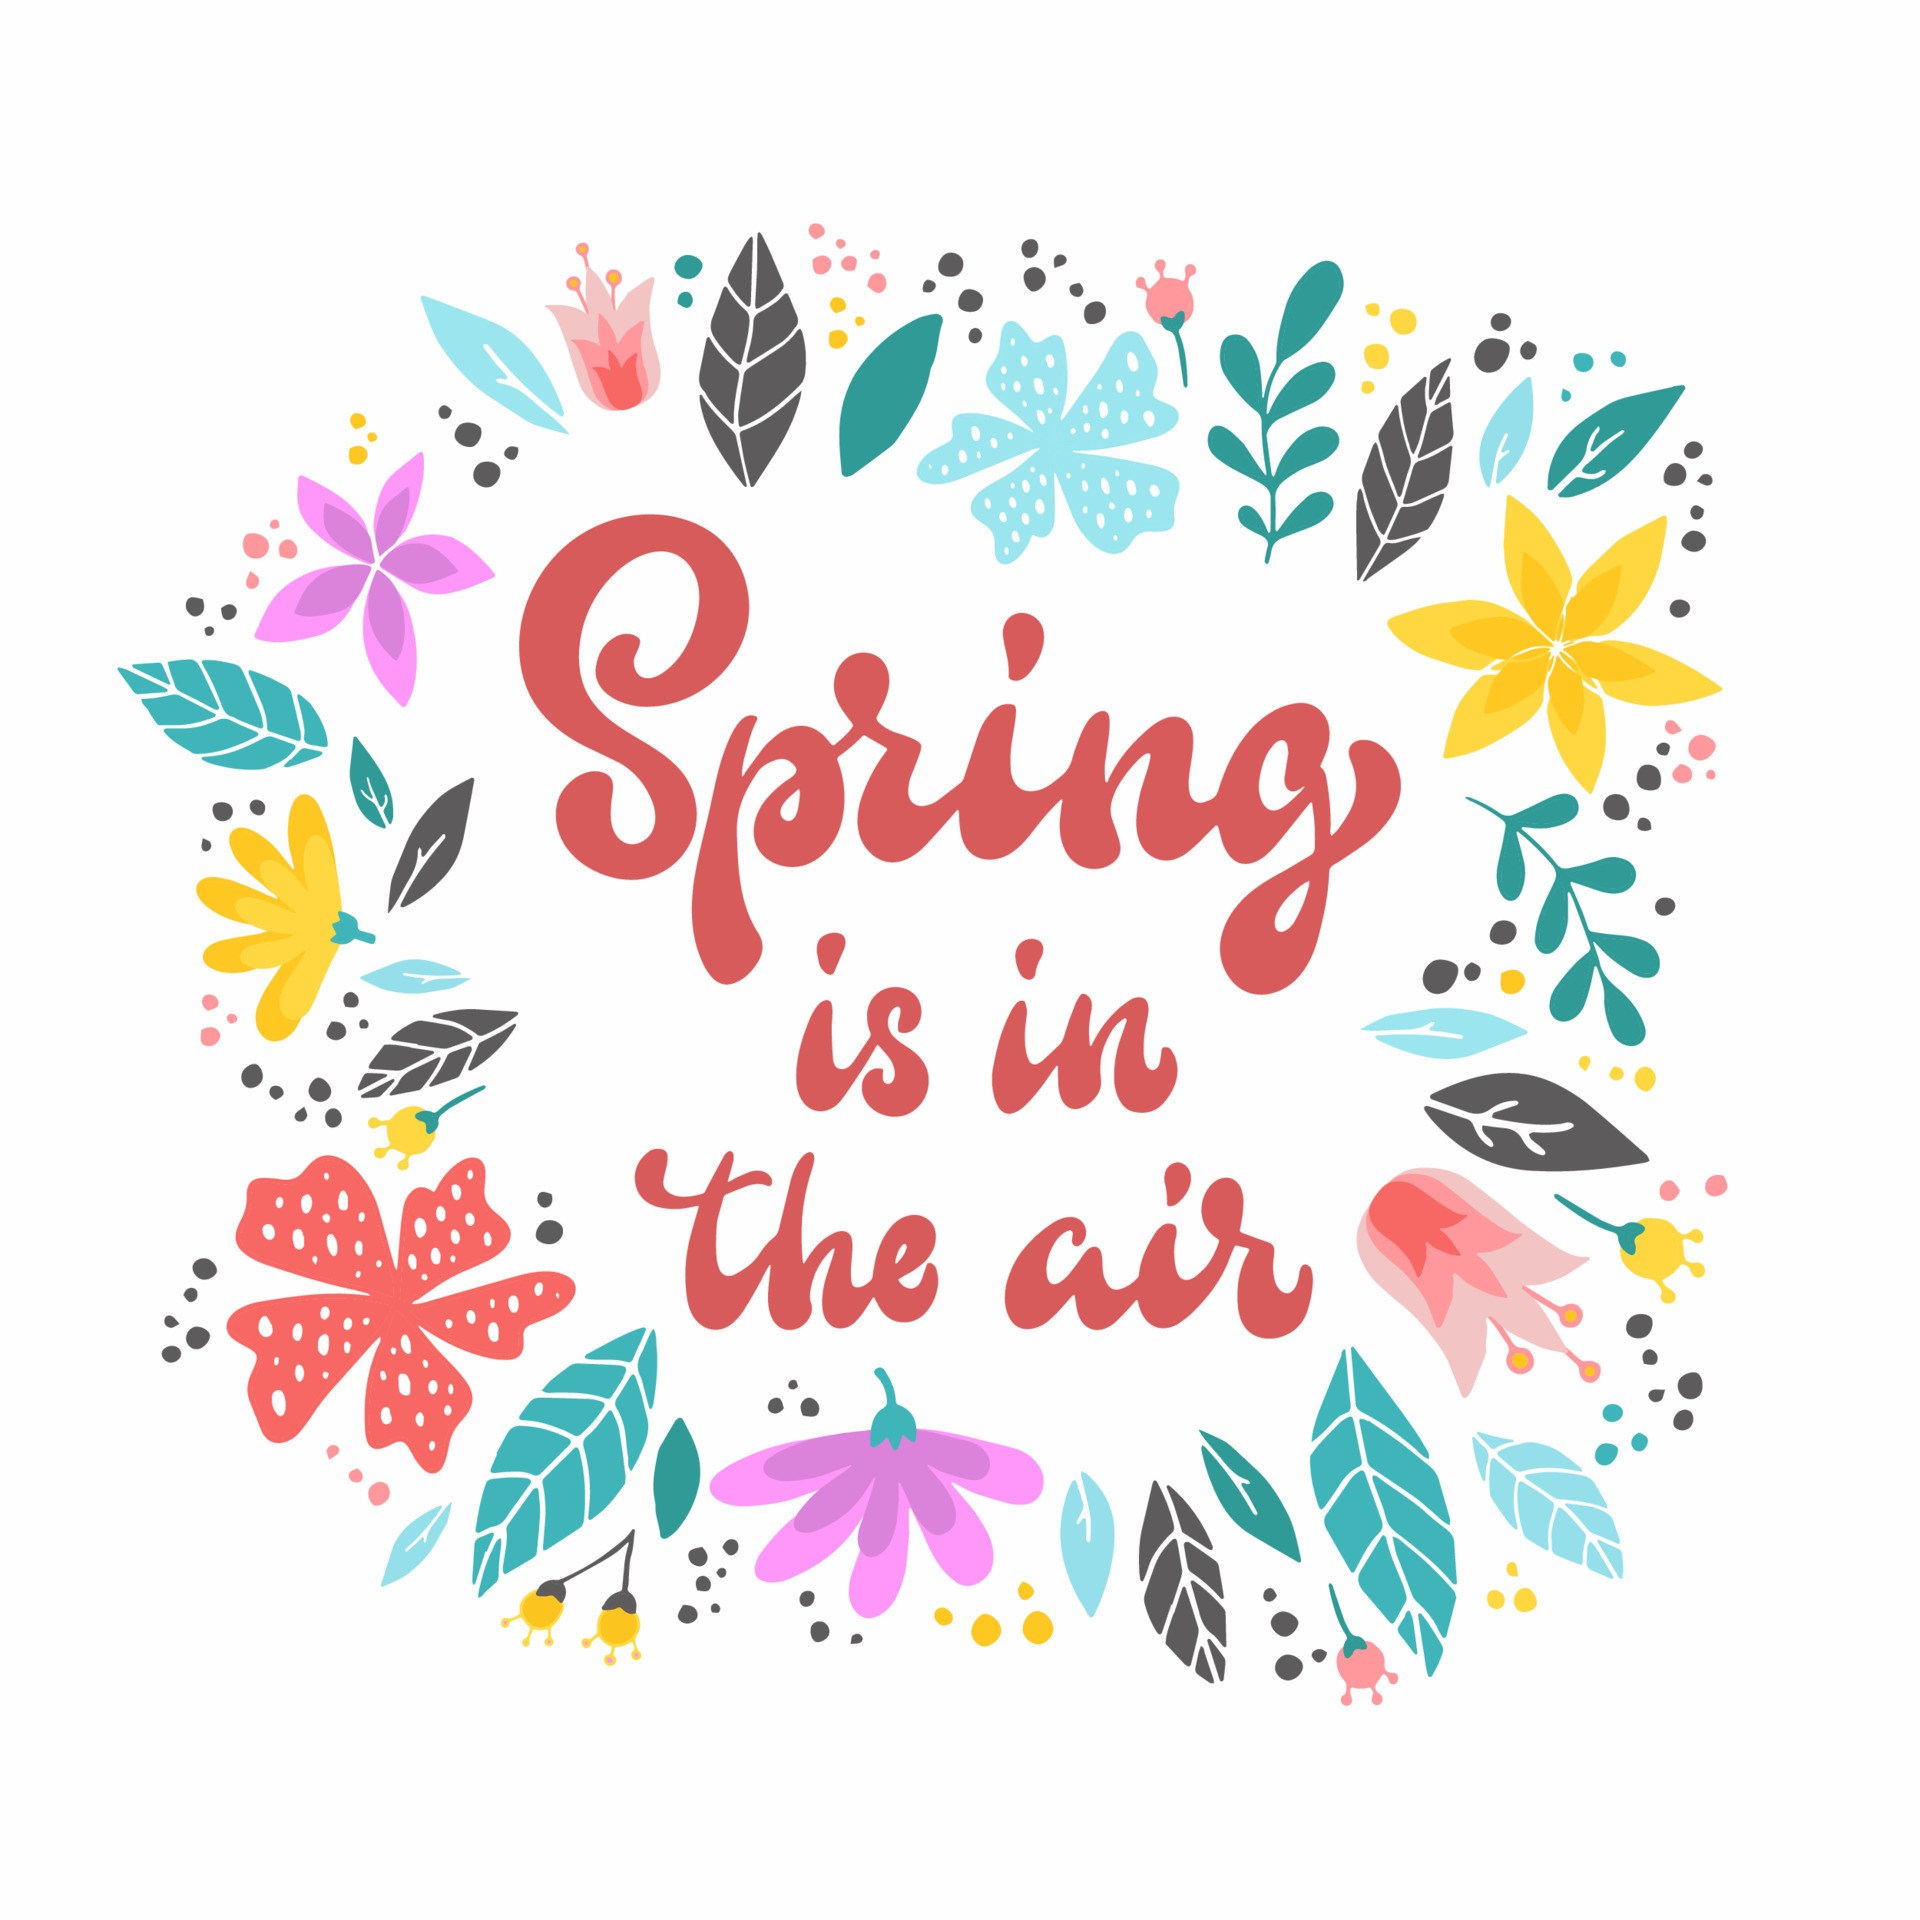 Mùa xuân là khoảng thời gian để bắt đầu những điều mới mẻ, thú vị và đầy hy vọng. Hãy xem bức ảnh này để cảm nhận nhịp sống rực rỡ và sự đổi mới của mùa xuân.